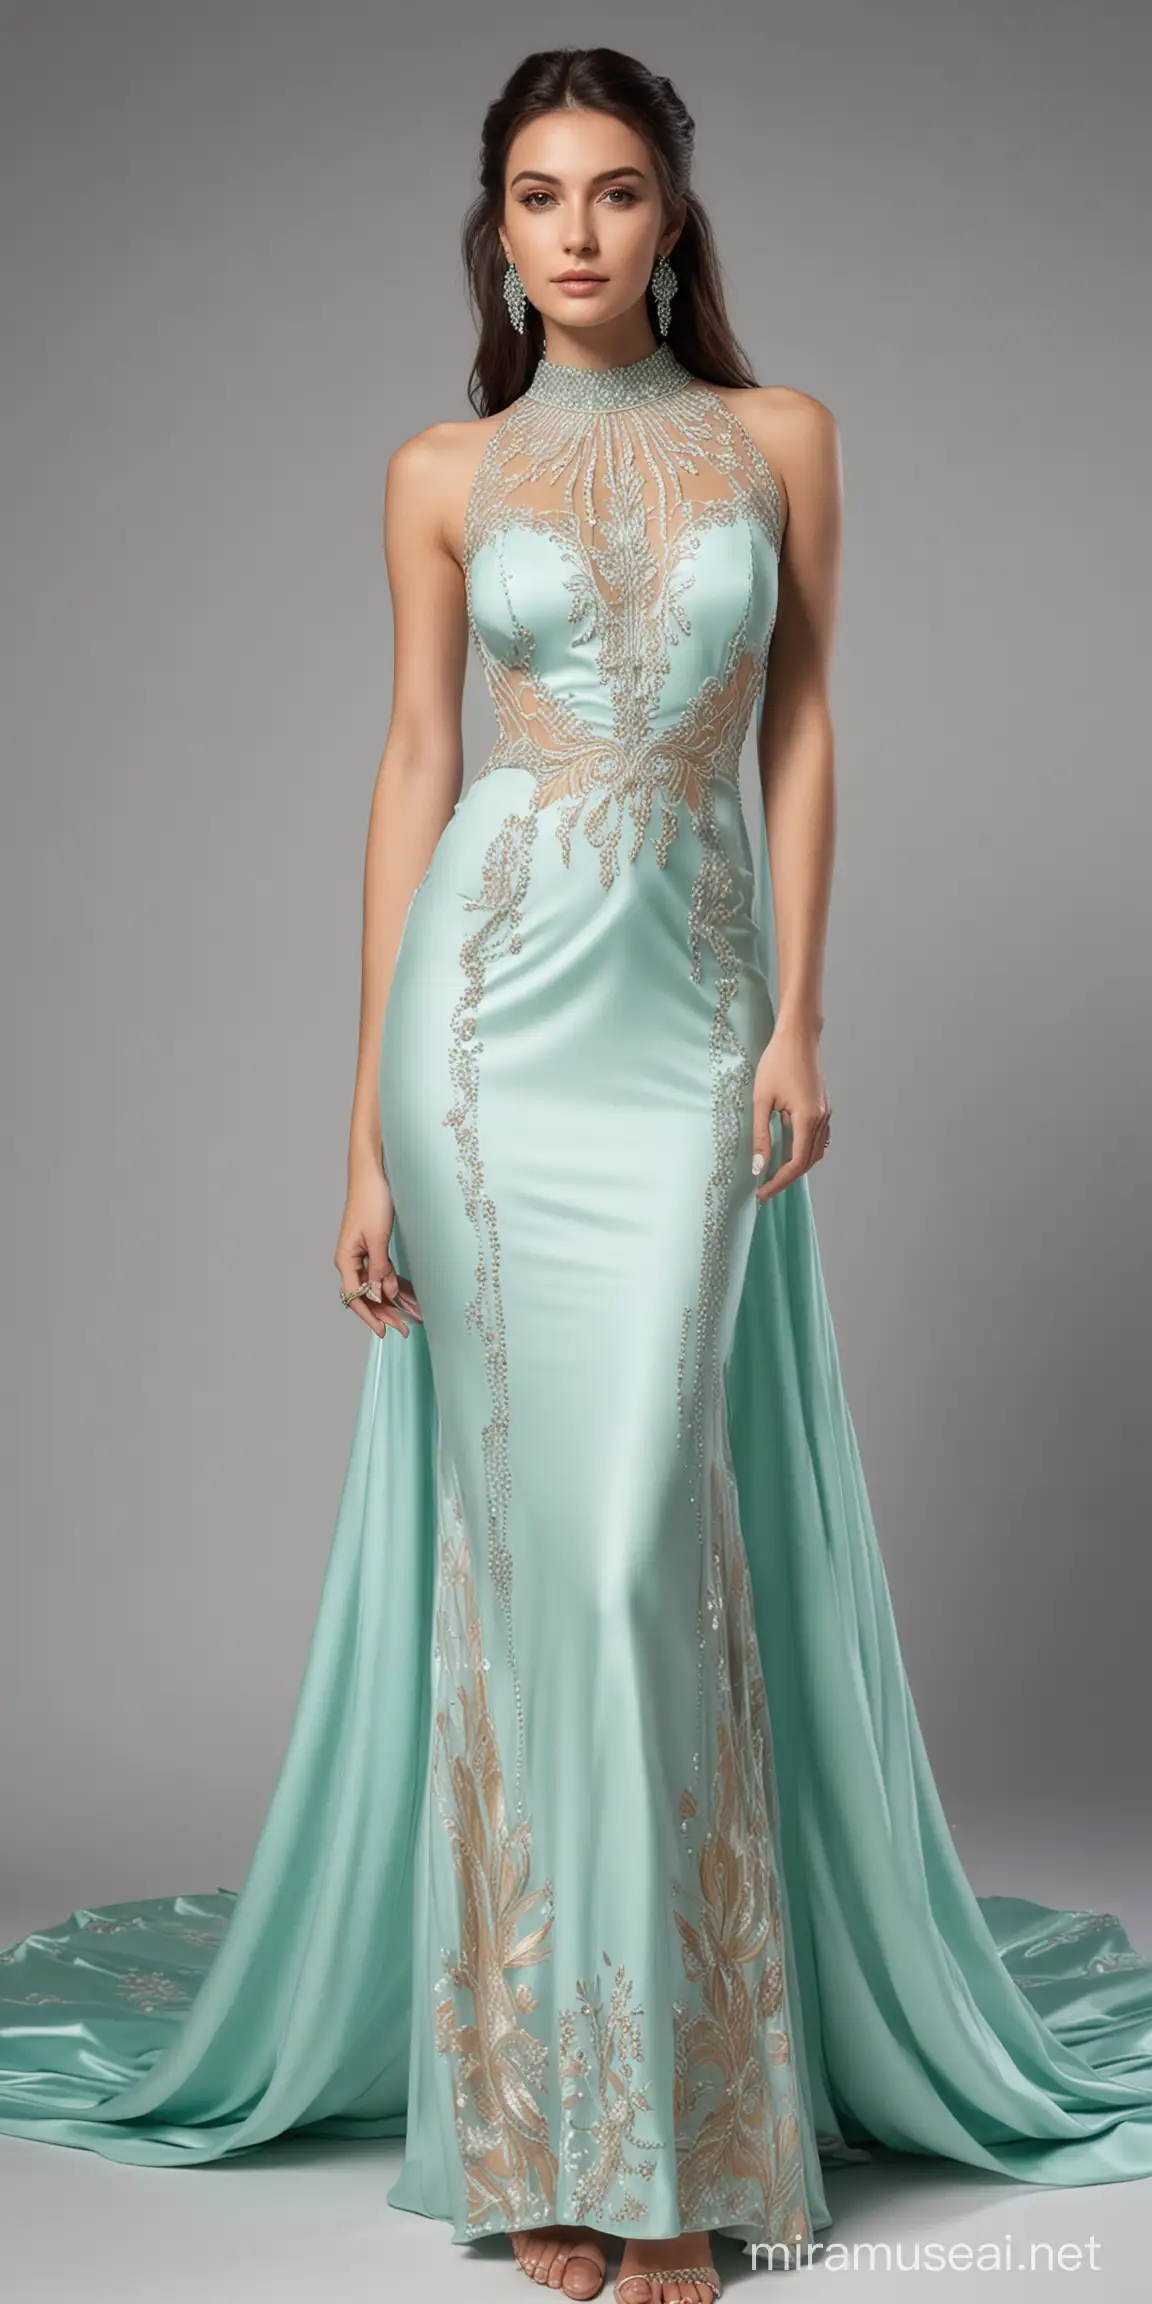 Luxury CasiopeiaThemed Fashion Dress in Tiffany Blue